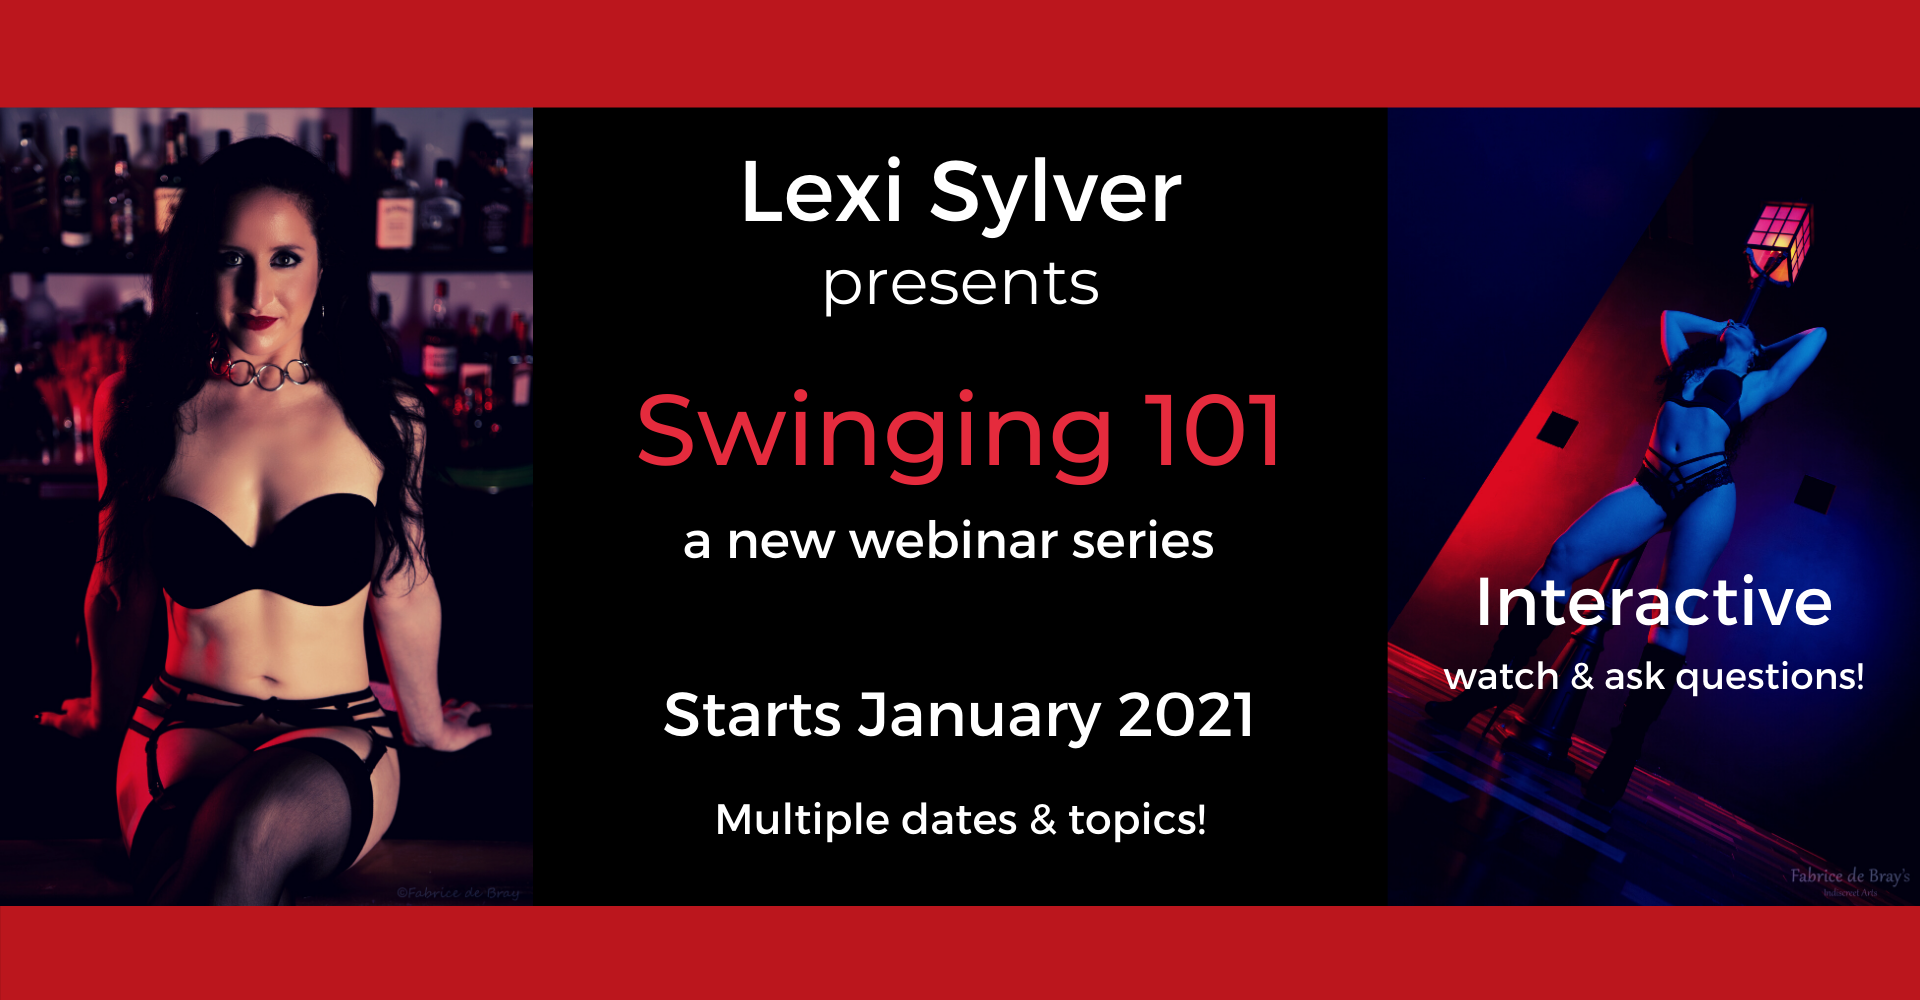 My Swinging 101 Webinar Series!